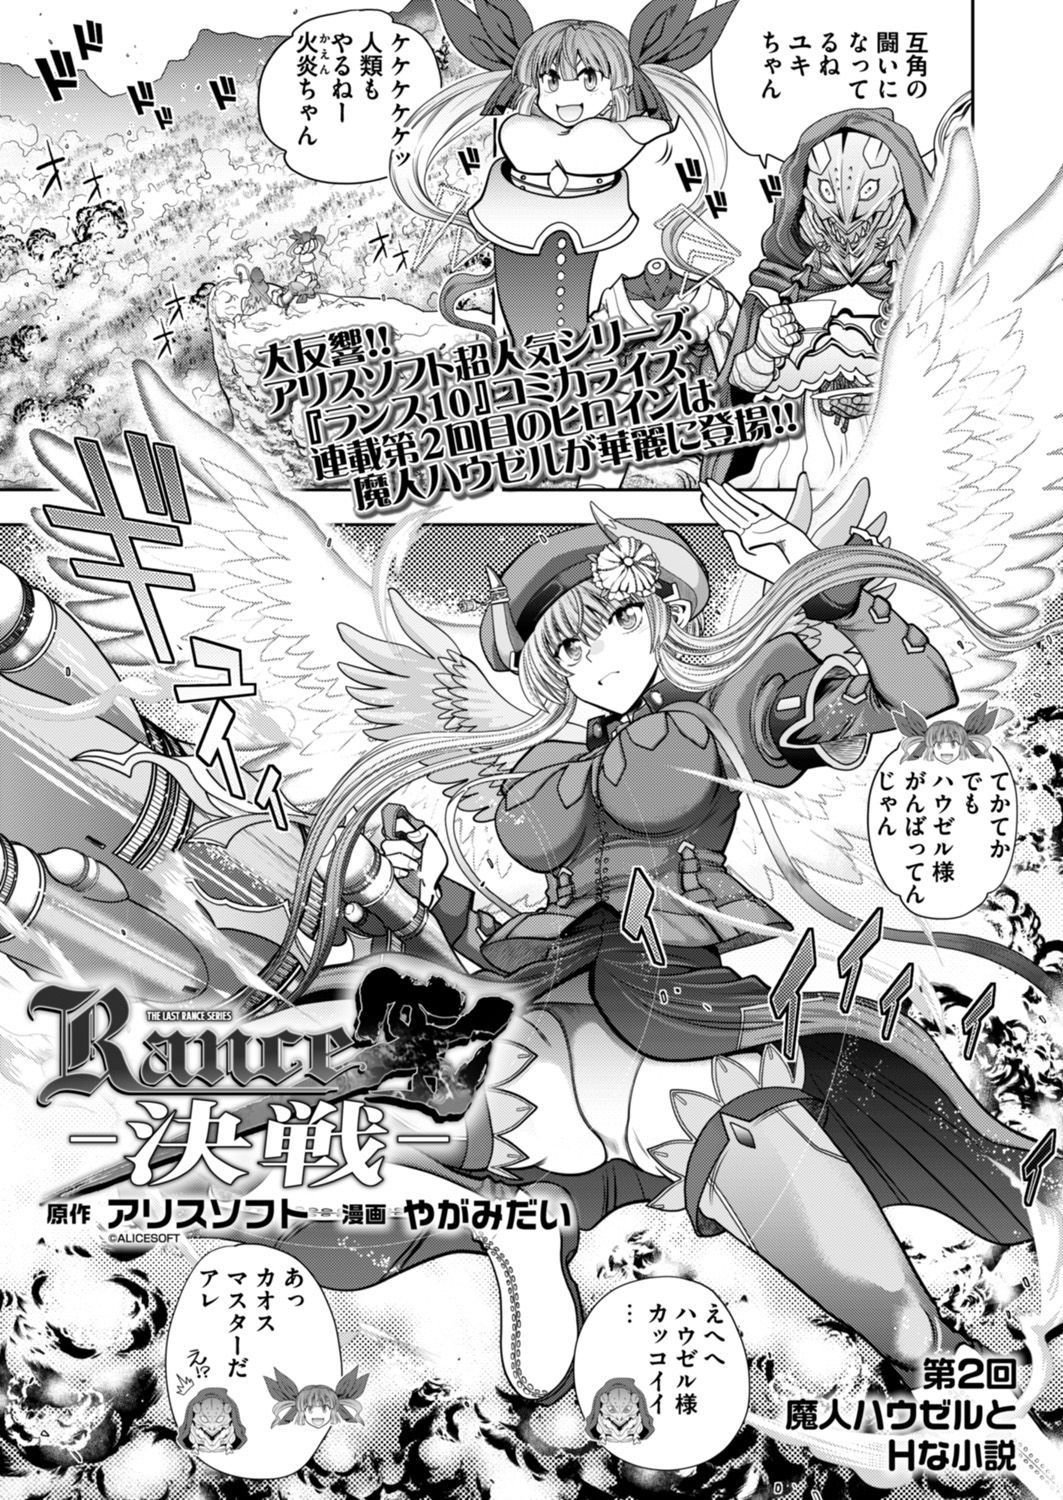 [Yagami Dai] Rance 10 -Kessen- Chapter 002 [やがみだい] ランス１０ー決戦ー 第2回